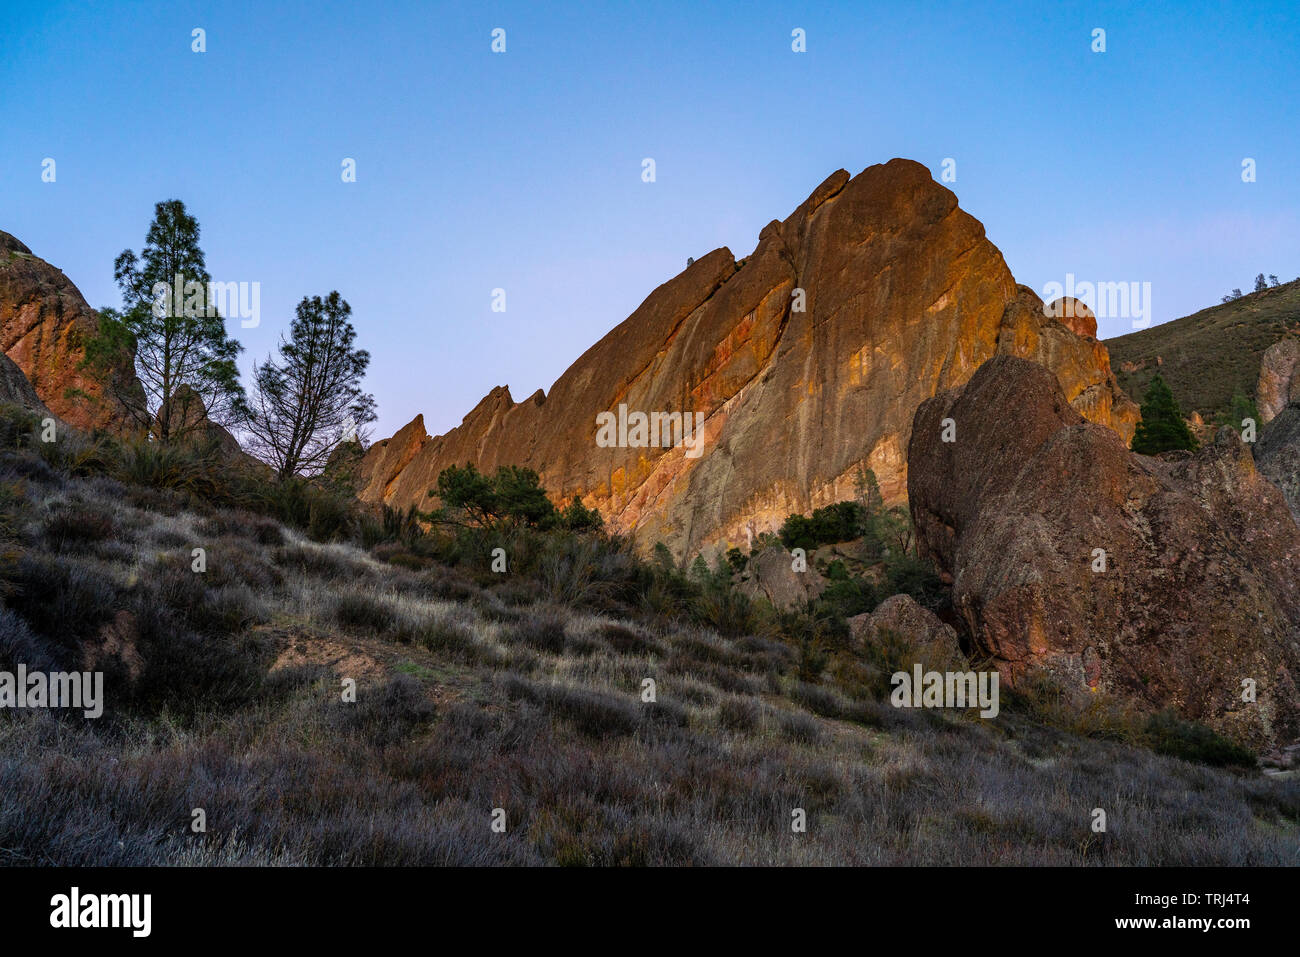 Pinnacles National Park, Kalifornien - Abendrot auf die Felsformationen der Pinnacles National Park. Stockfoto